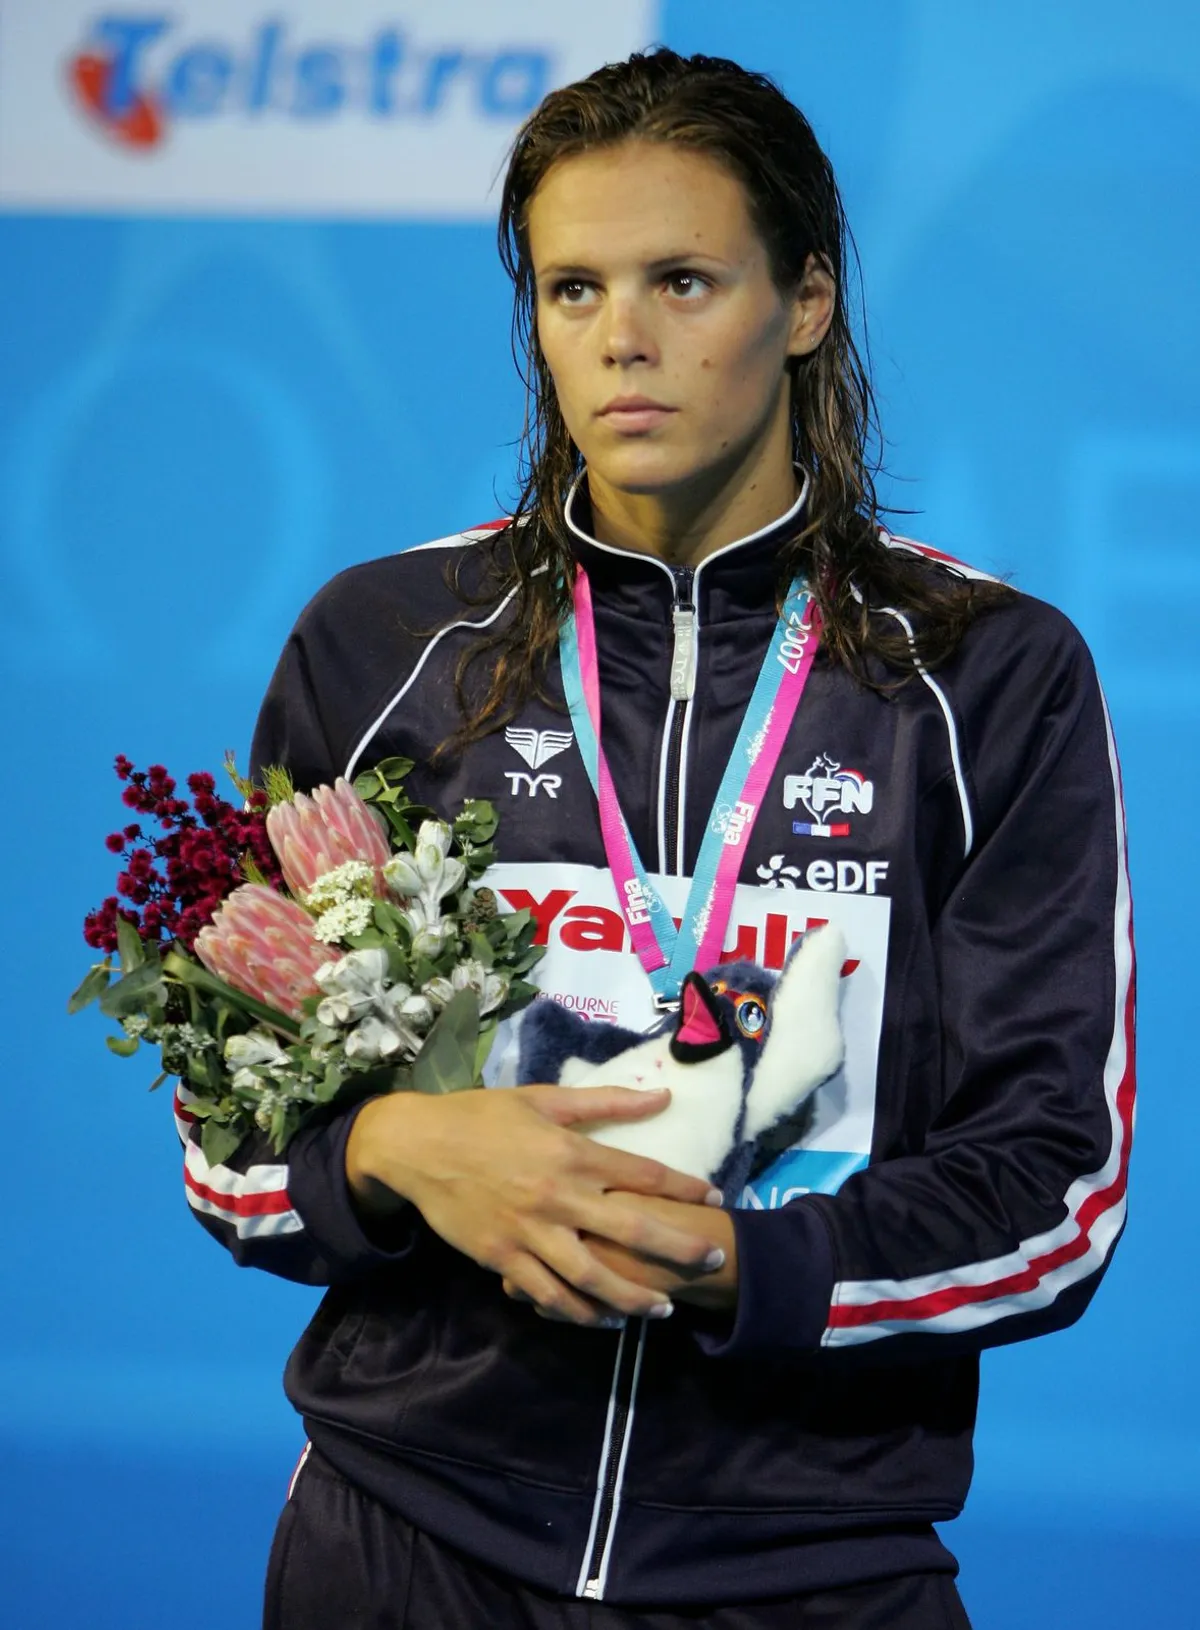 La championne de natation Laure Manaudou | Photo : Getty Images